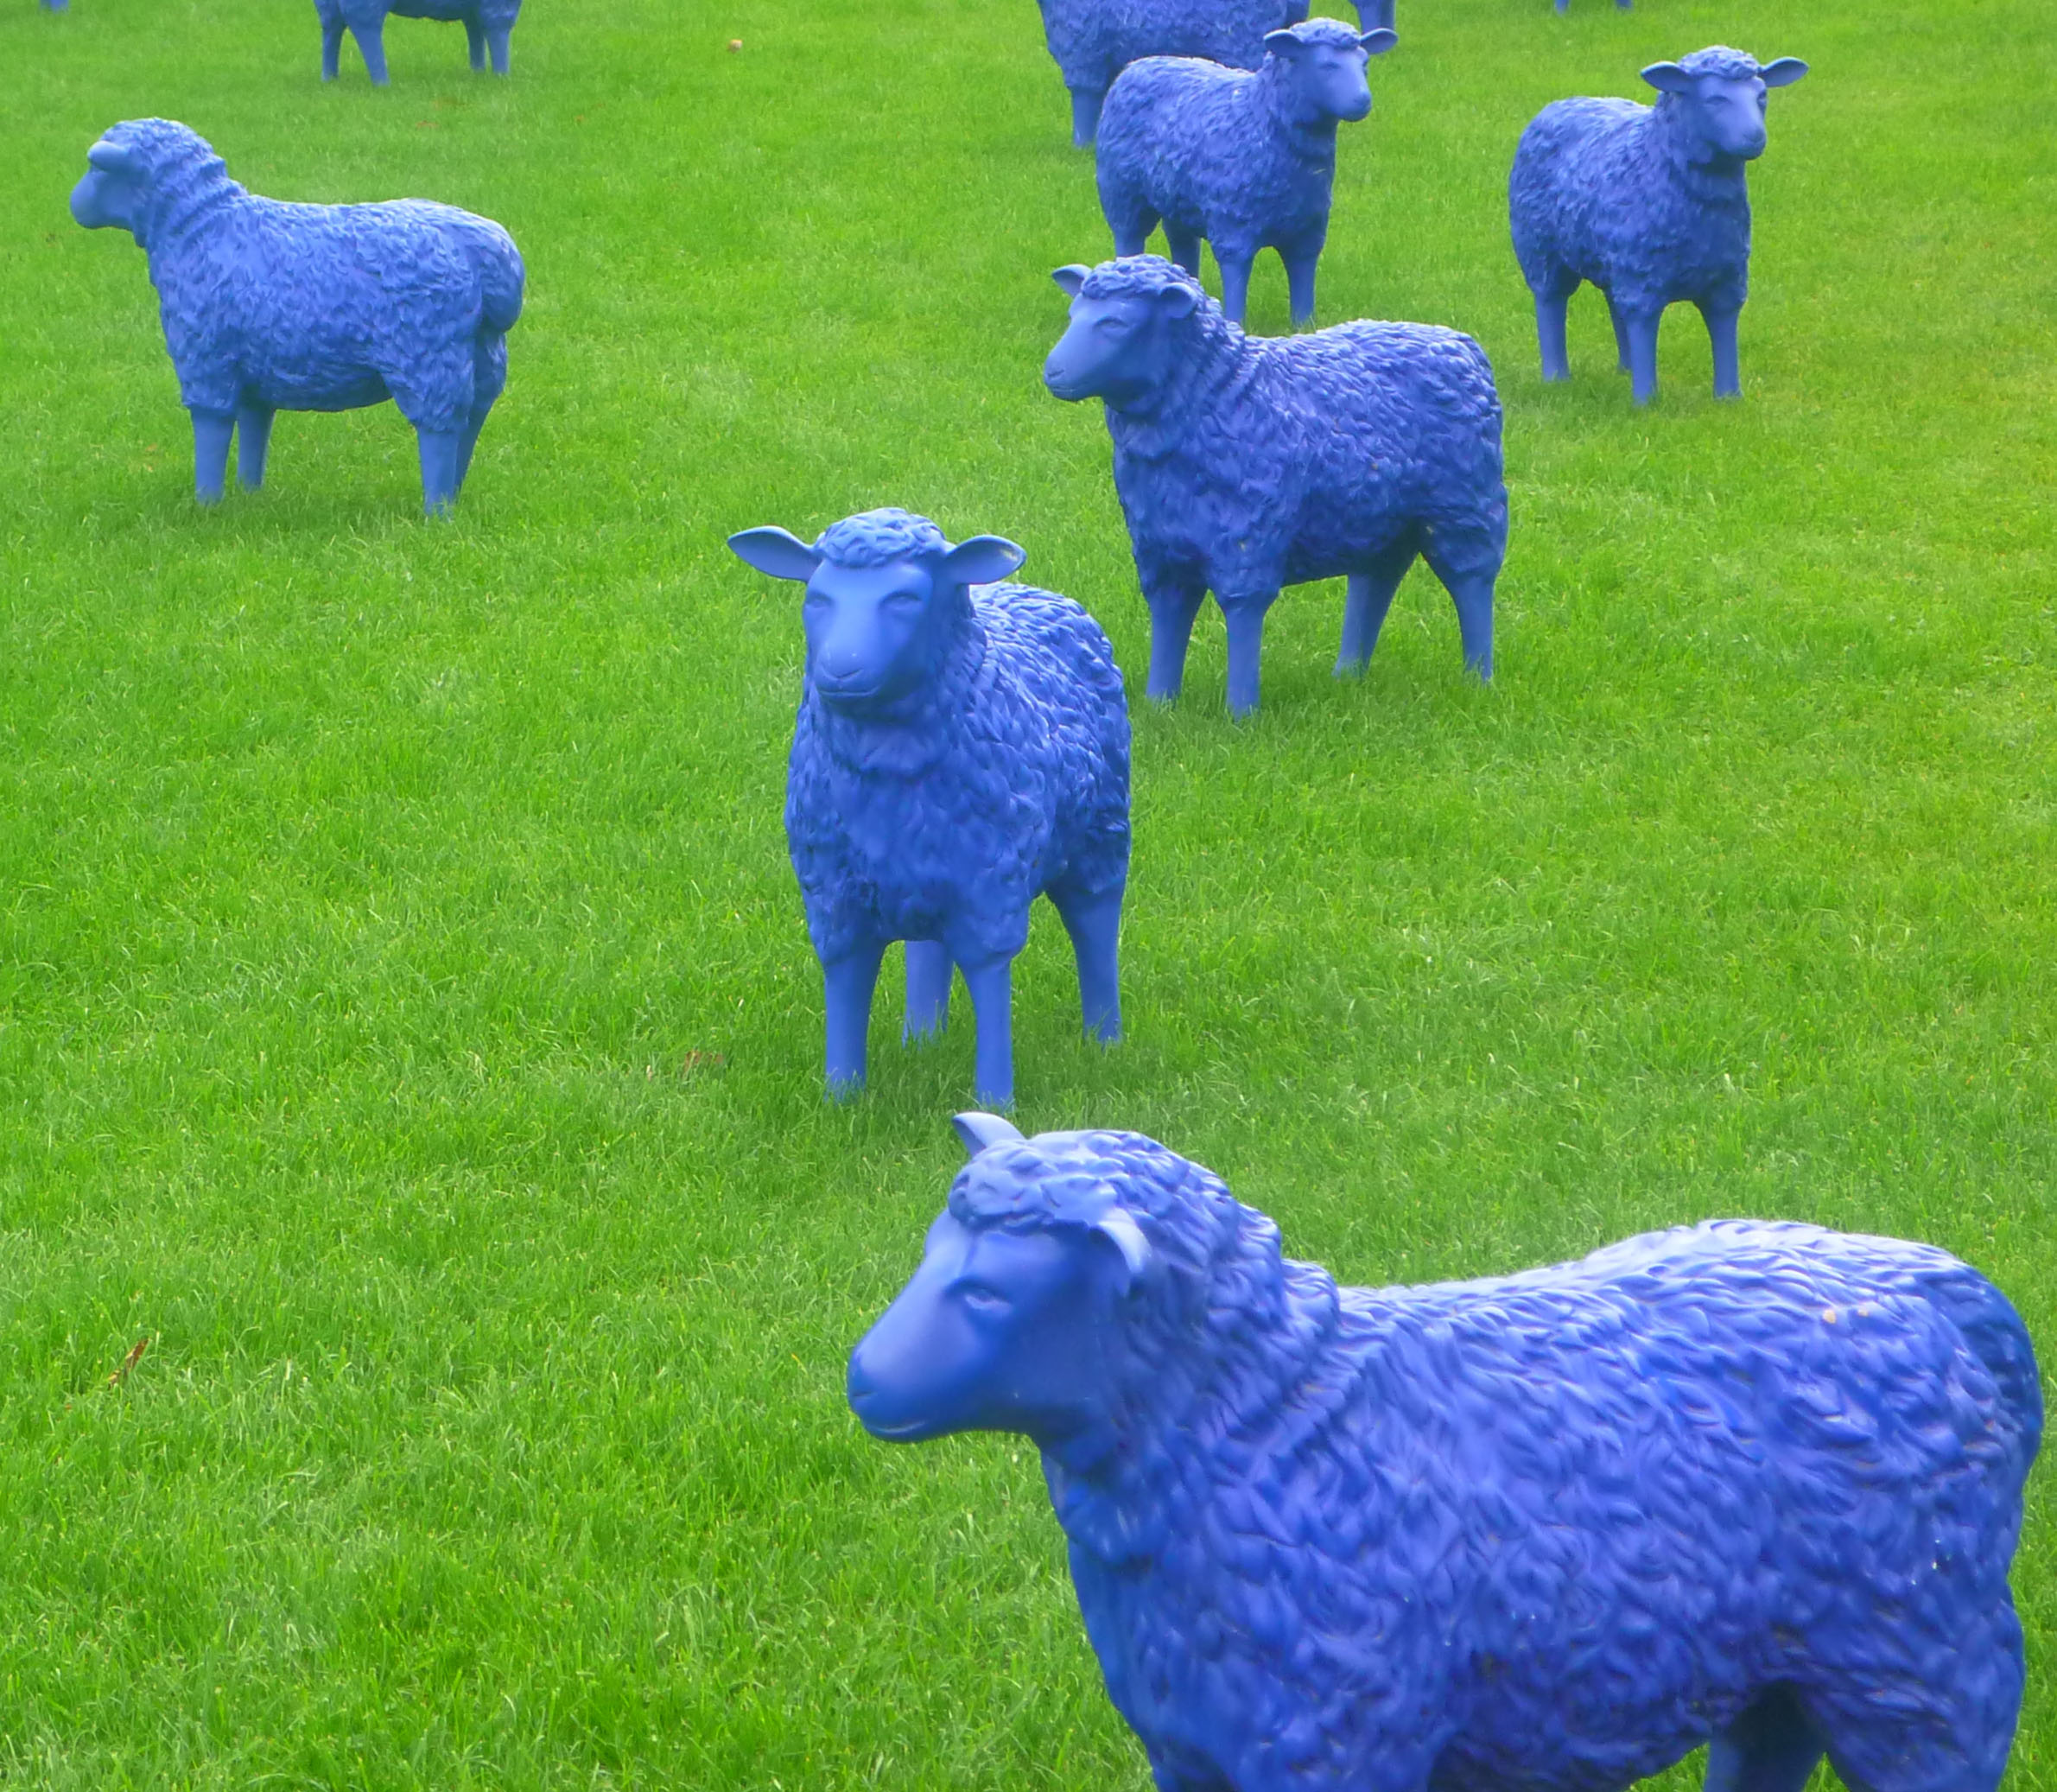 2013-9-22 Ein Schaf, oh ein Schaf